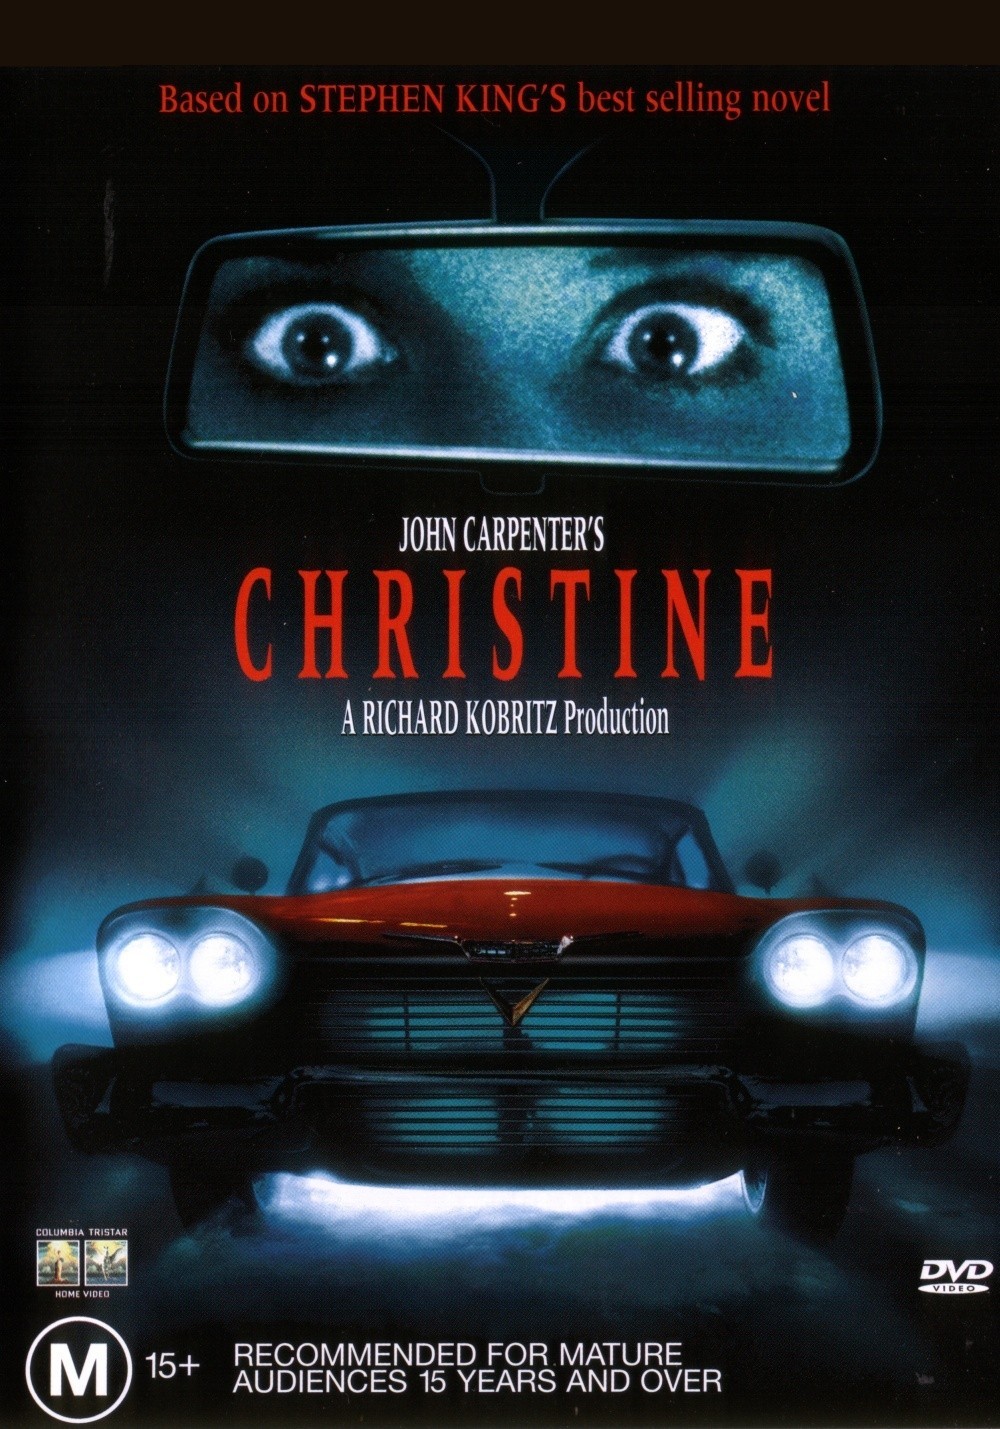 Stiahni si Filmy s titulkama Christine (1983) = CSFD 69%